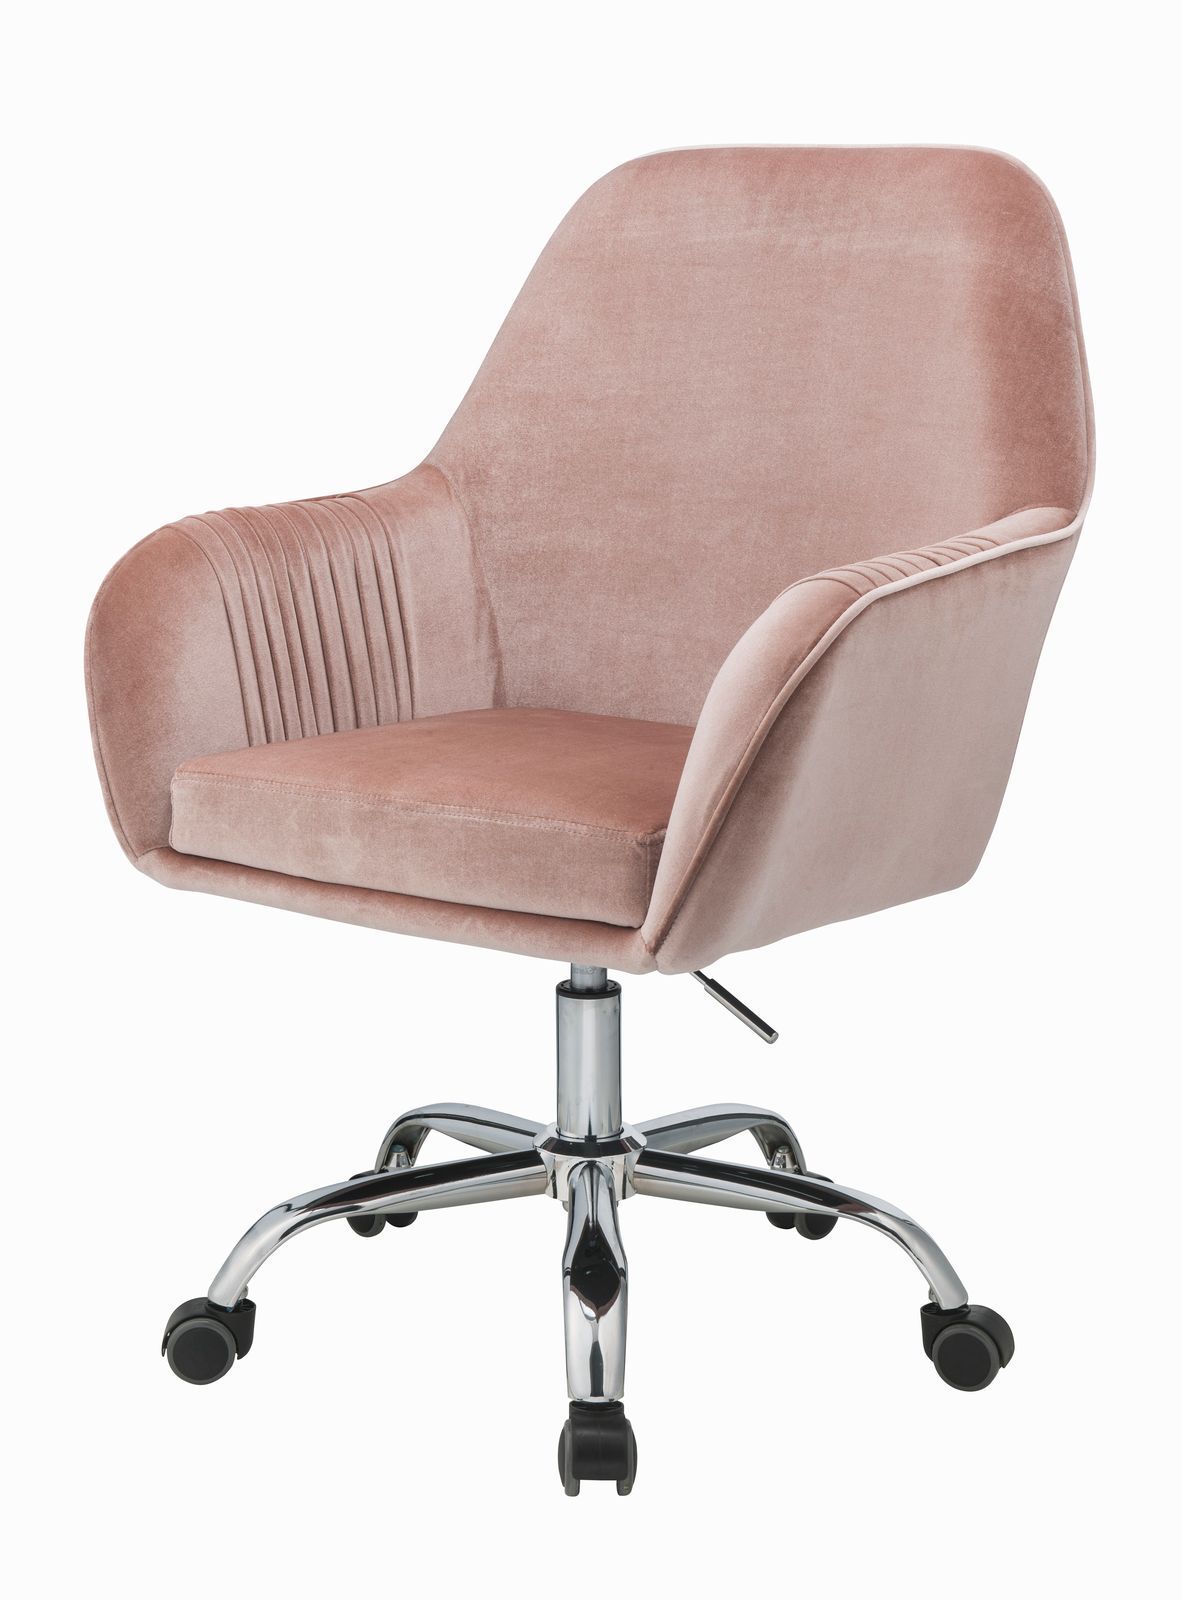 ACME Eimer Office Chair in Peach Velvet & Chrome 92504